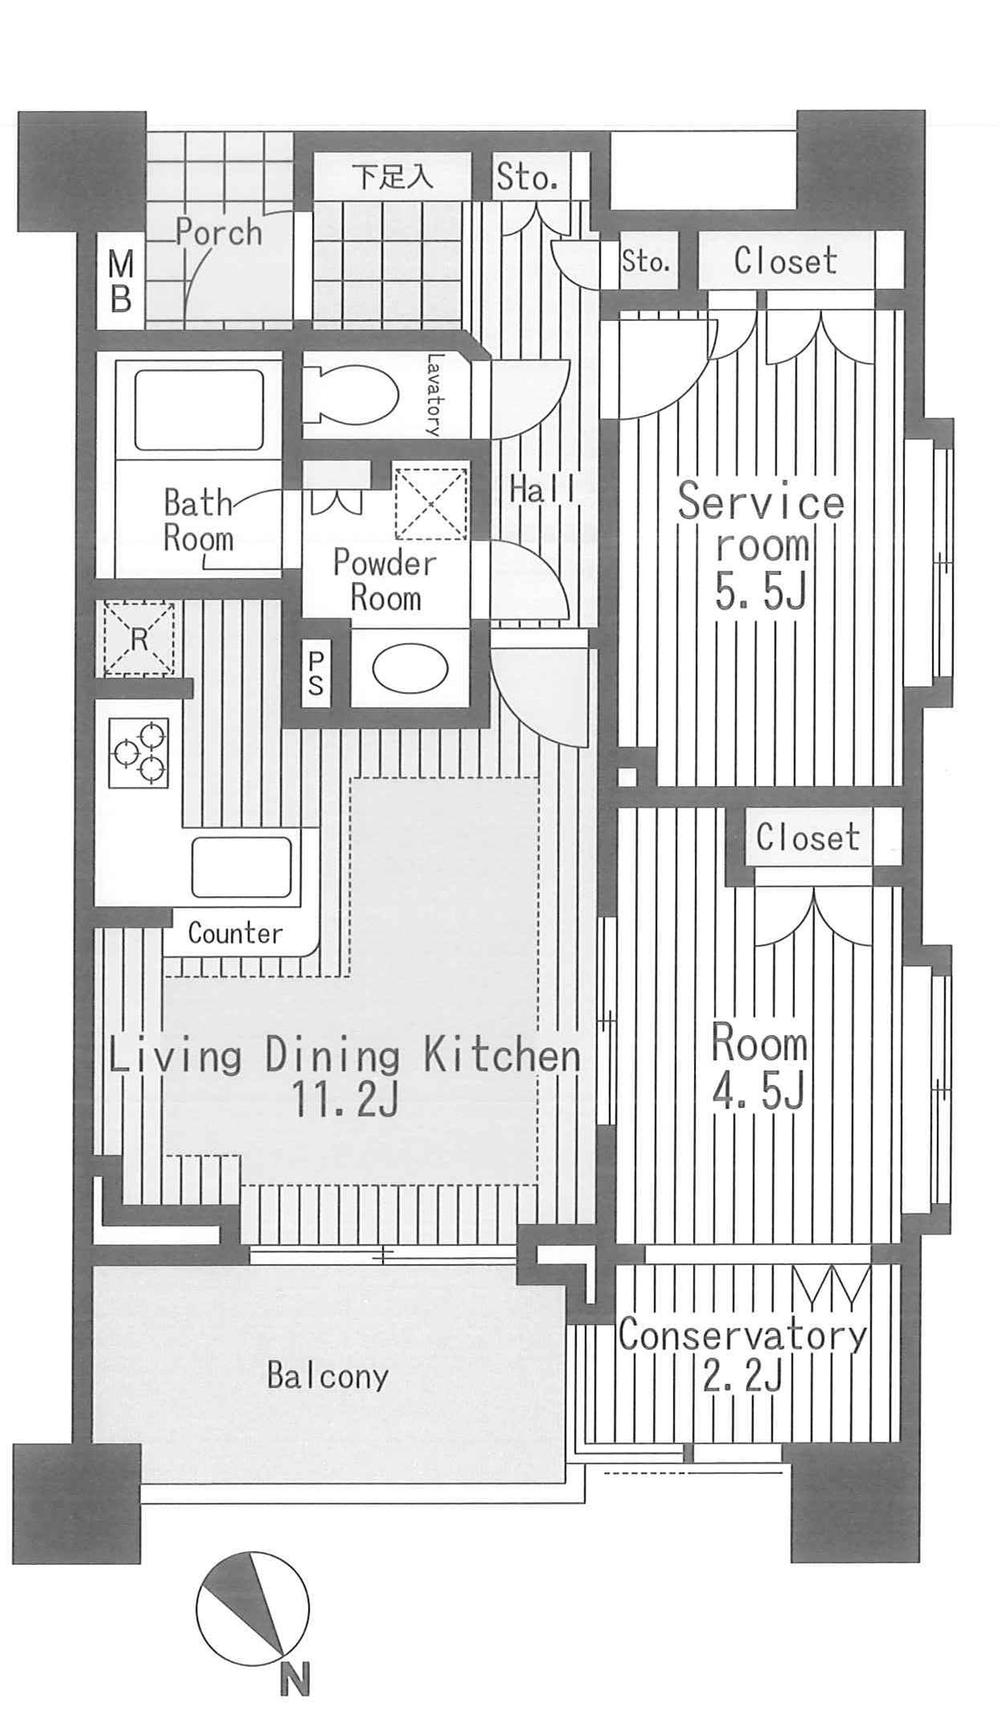 Floor plan. 1LDK + S (storeroom), Price 29,800,000 yen, Occupied area 53.95 sq m , Balcony area 5.83 sq m floor plan